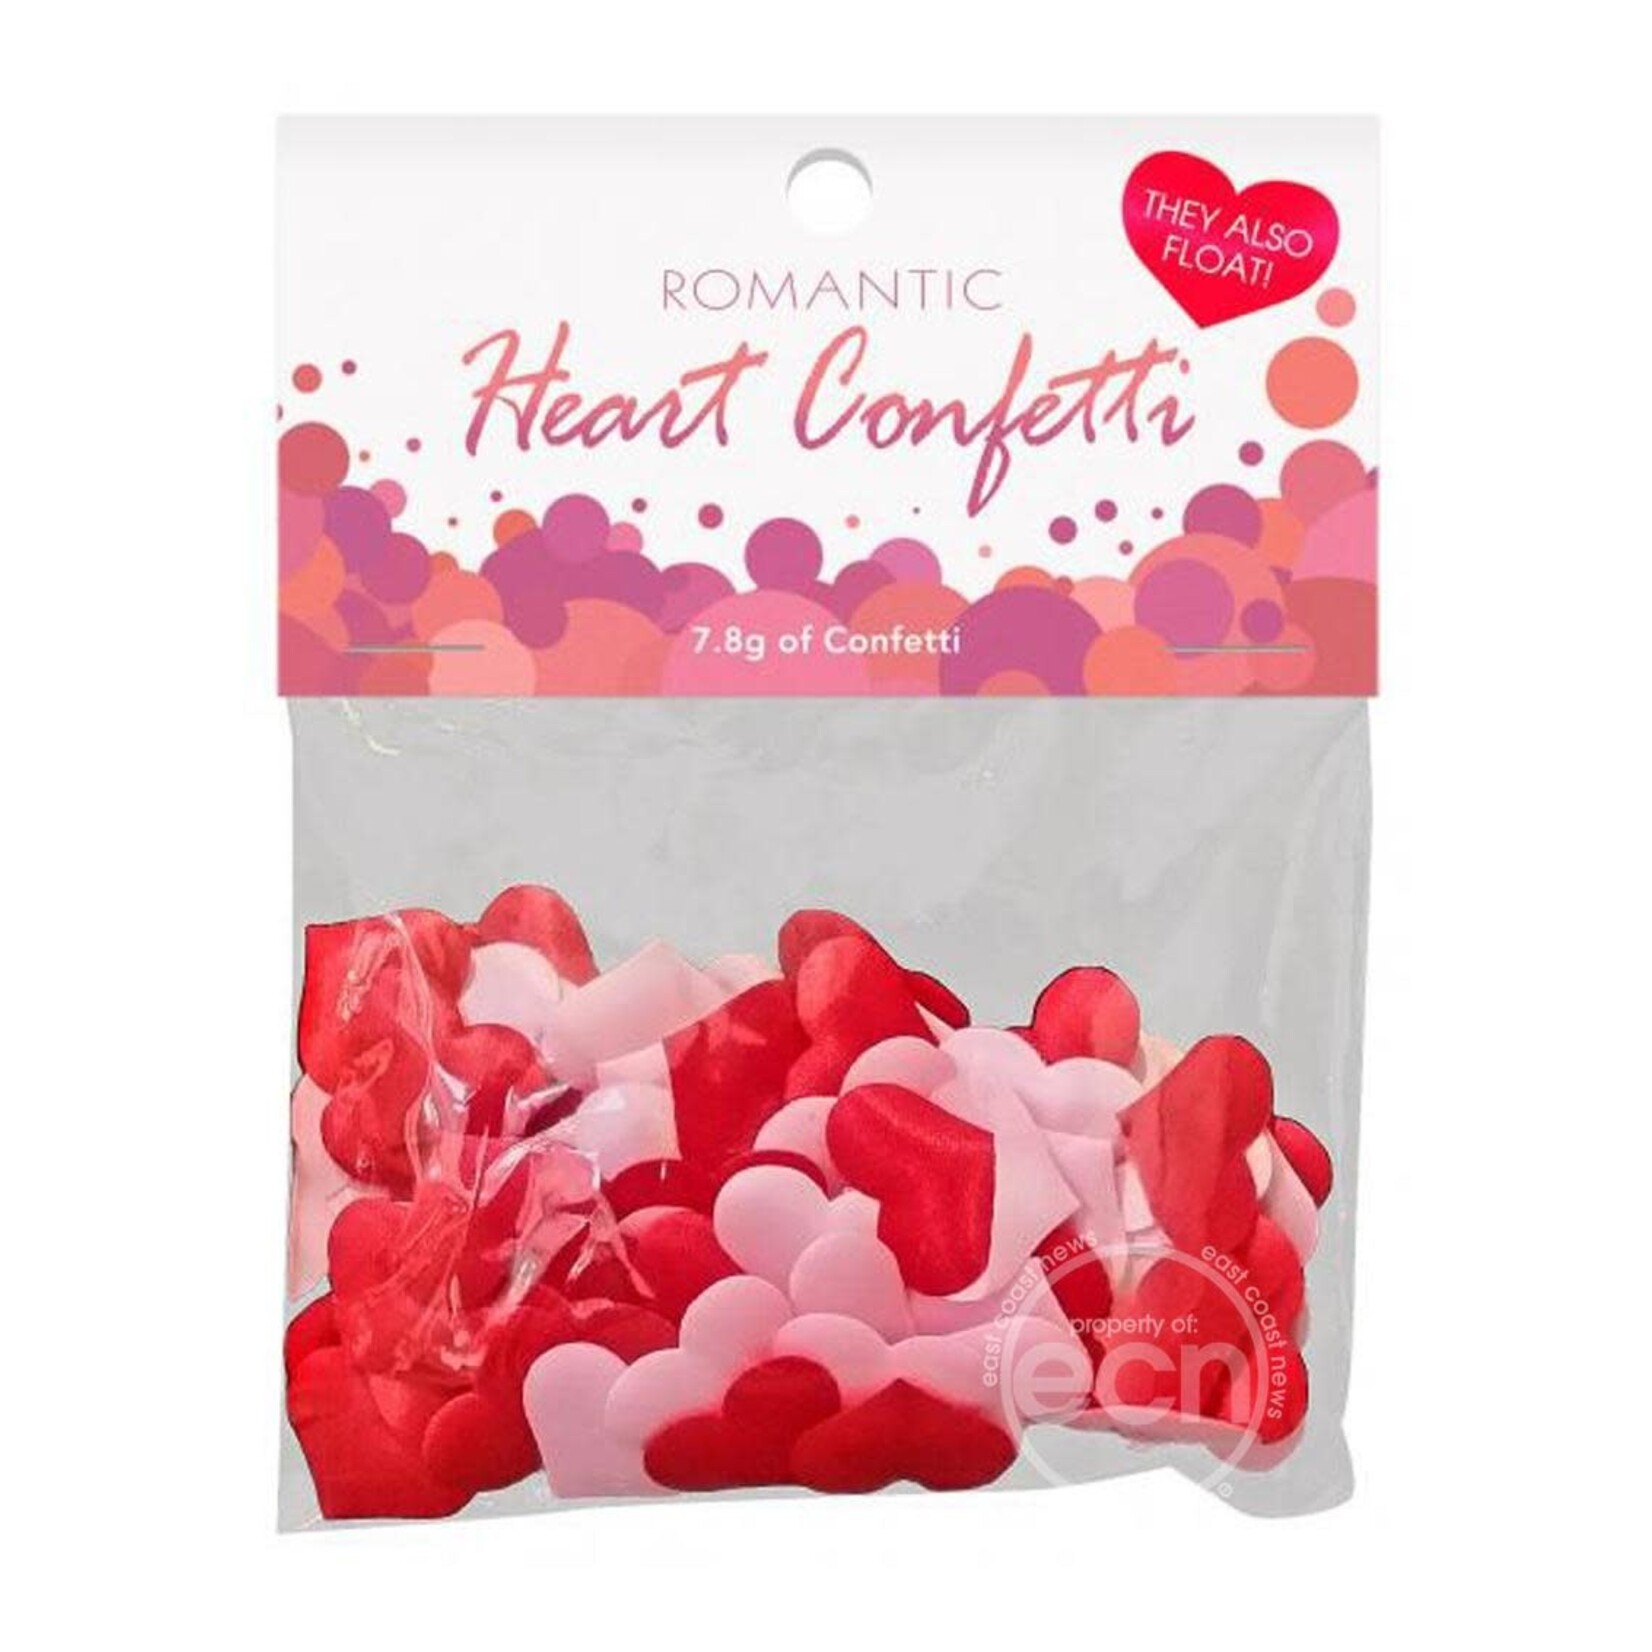 Romantic Heart Confetti